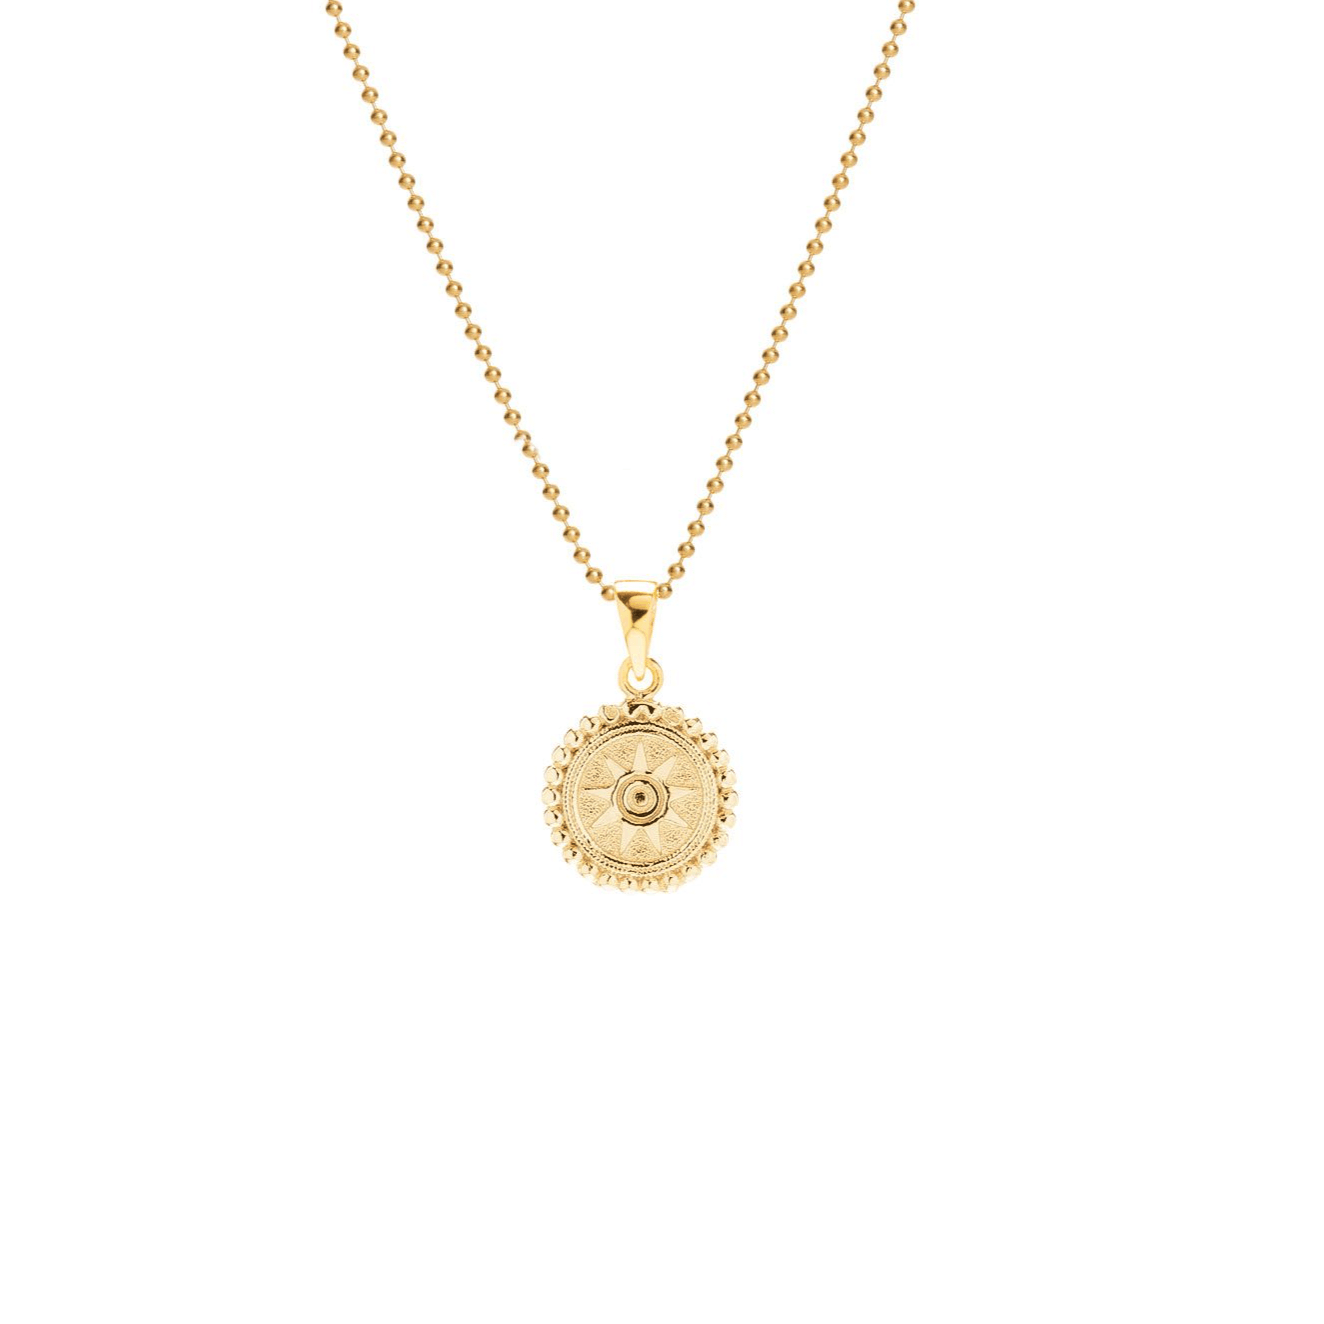 SUNSHINE ◦ 925' Silber goldplattiert - Halskette - iz-el